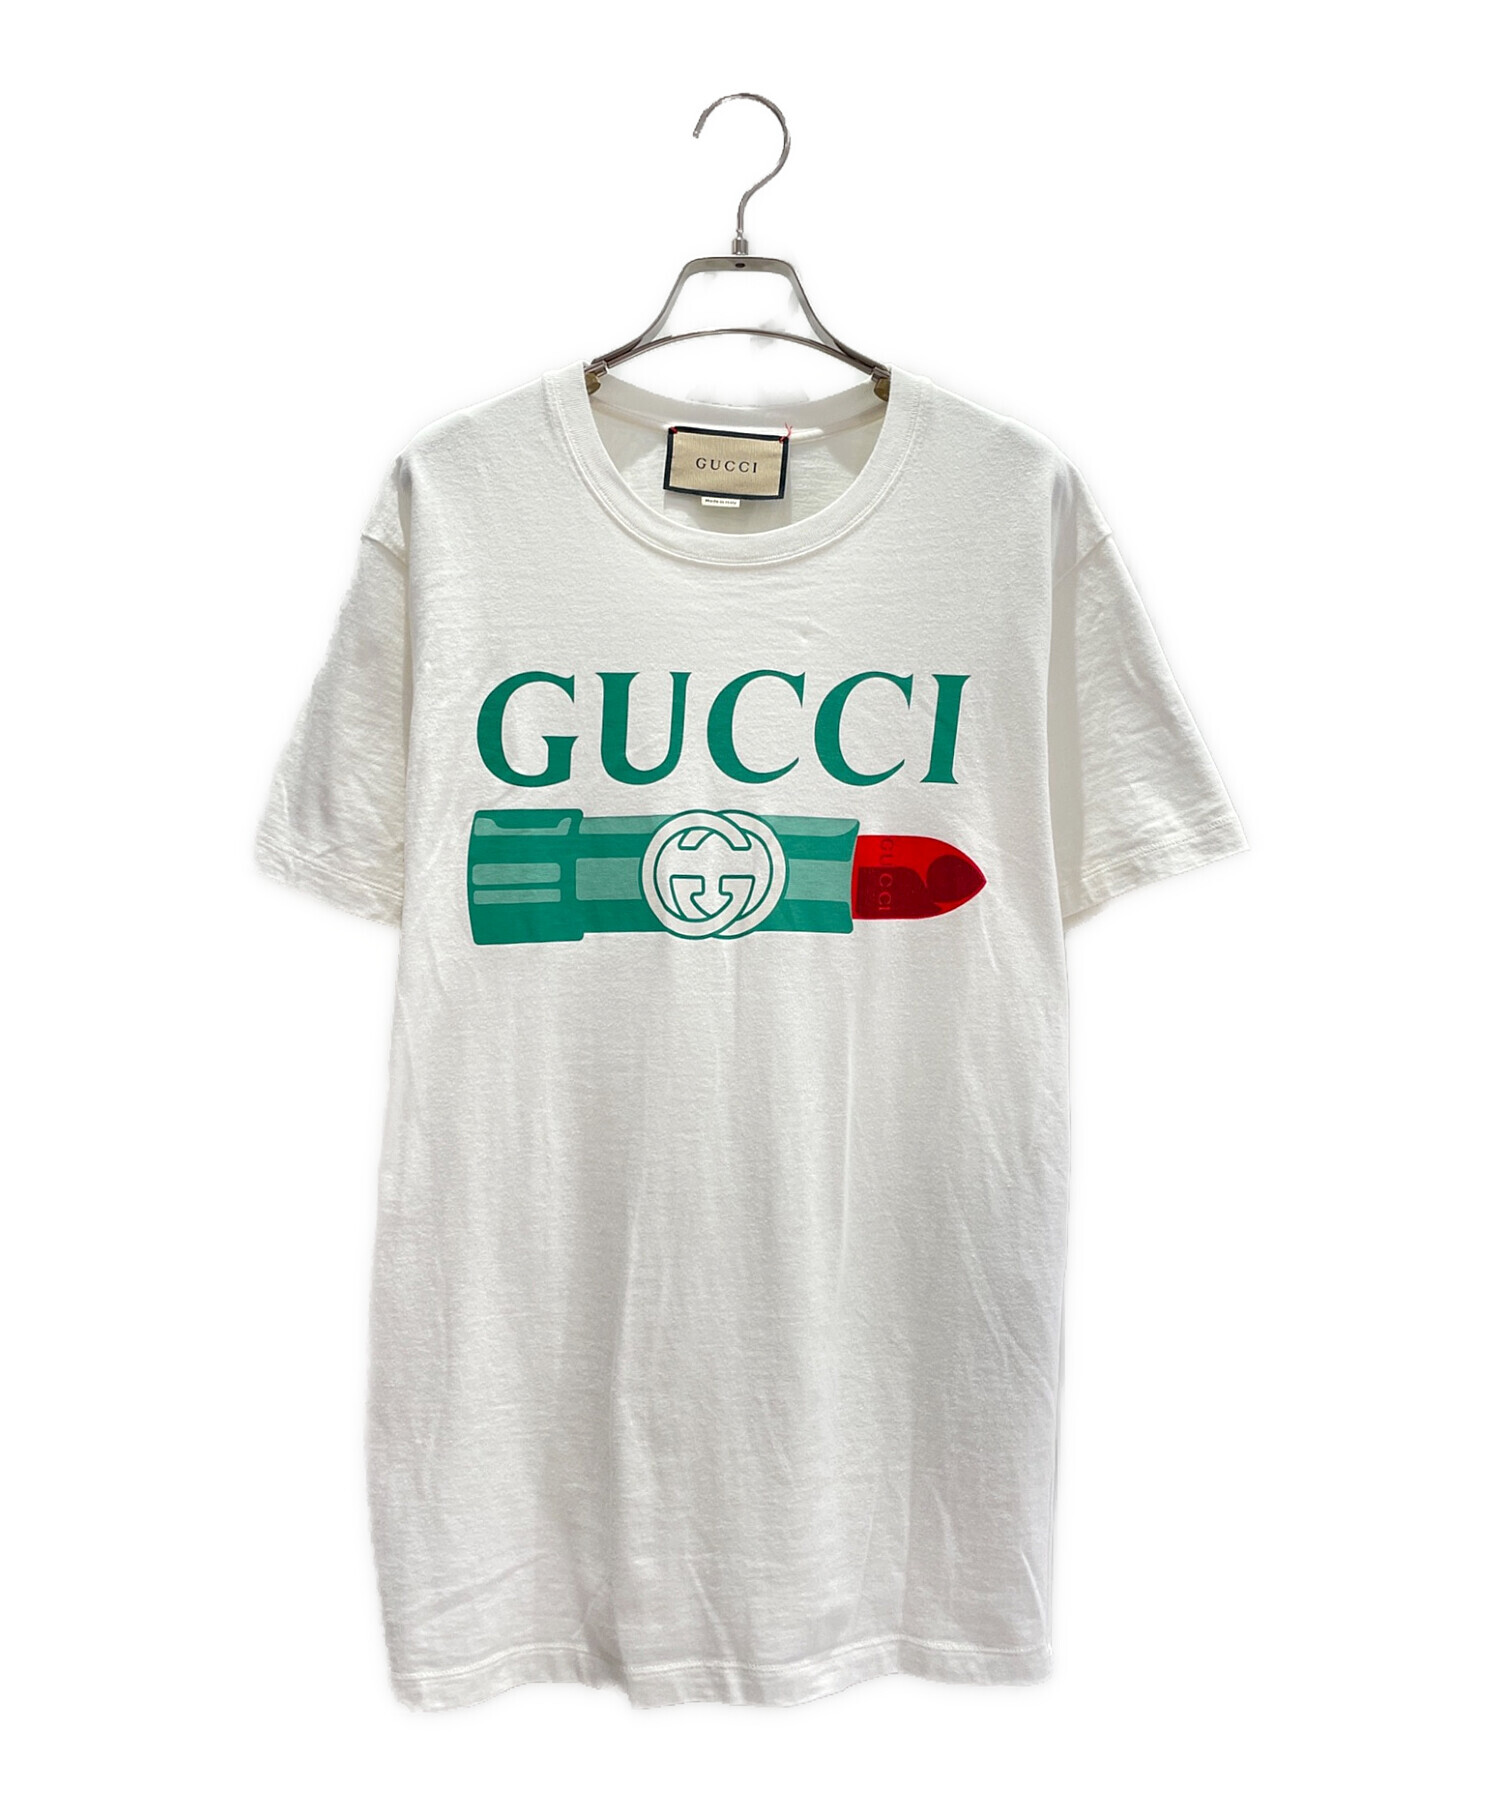 人気アイテム GUCCI ロゴプリントTシャツ Sサイズ グッチカラー 